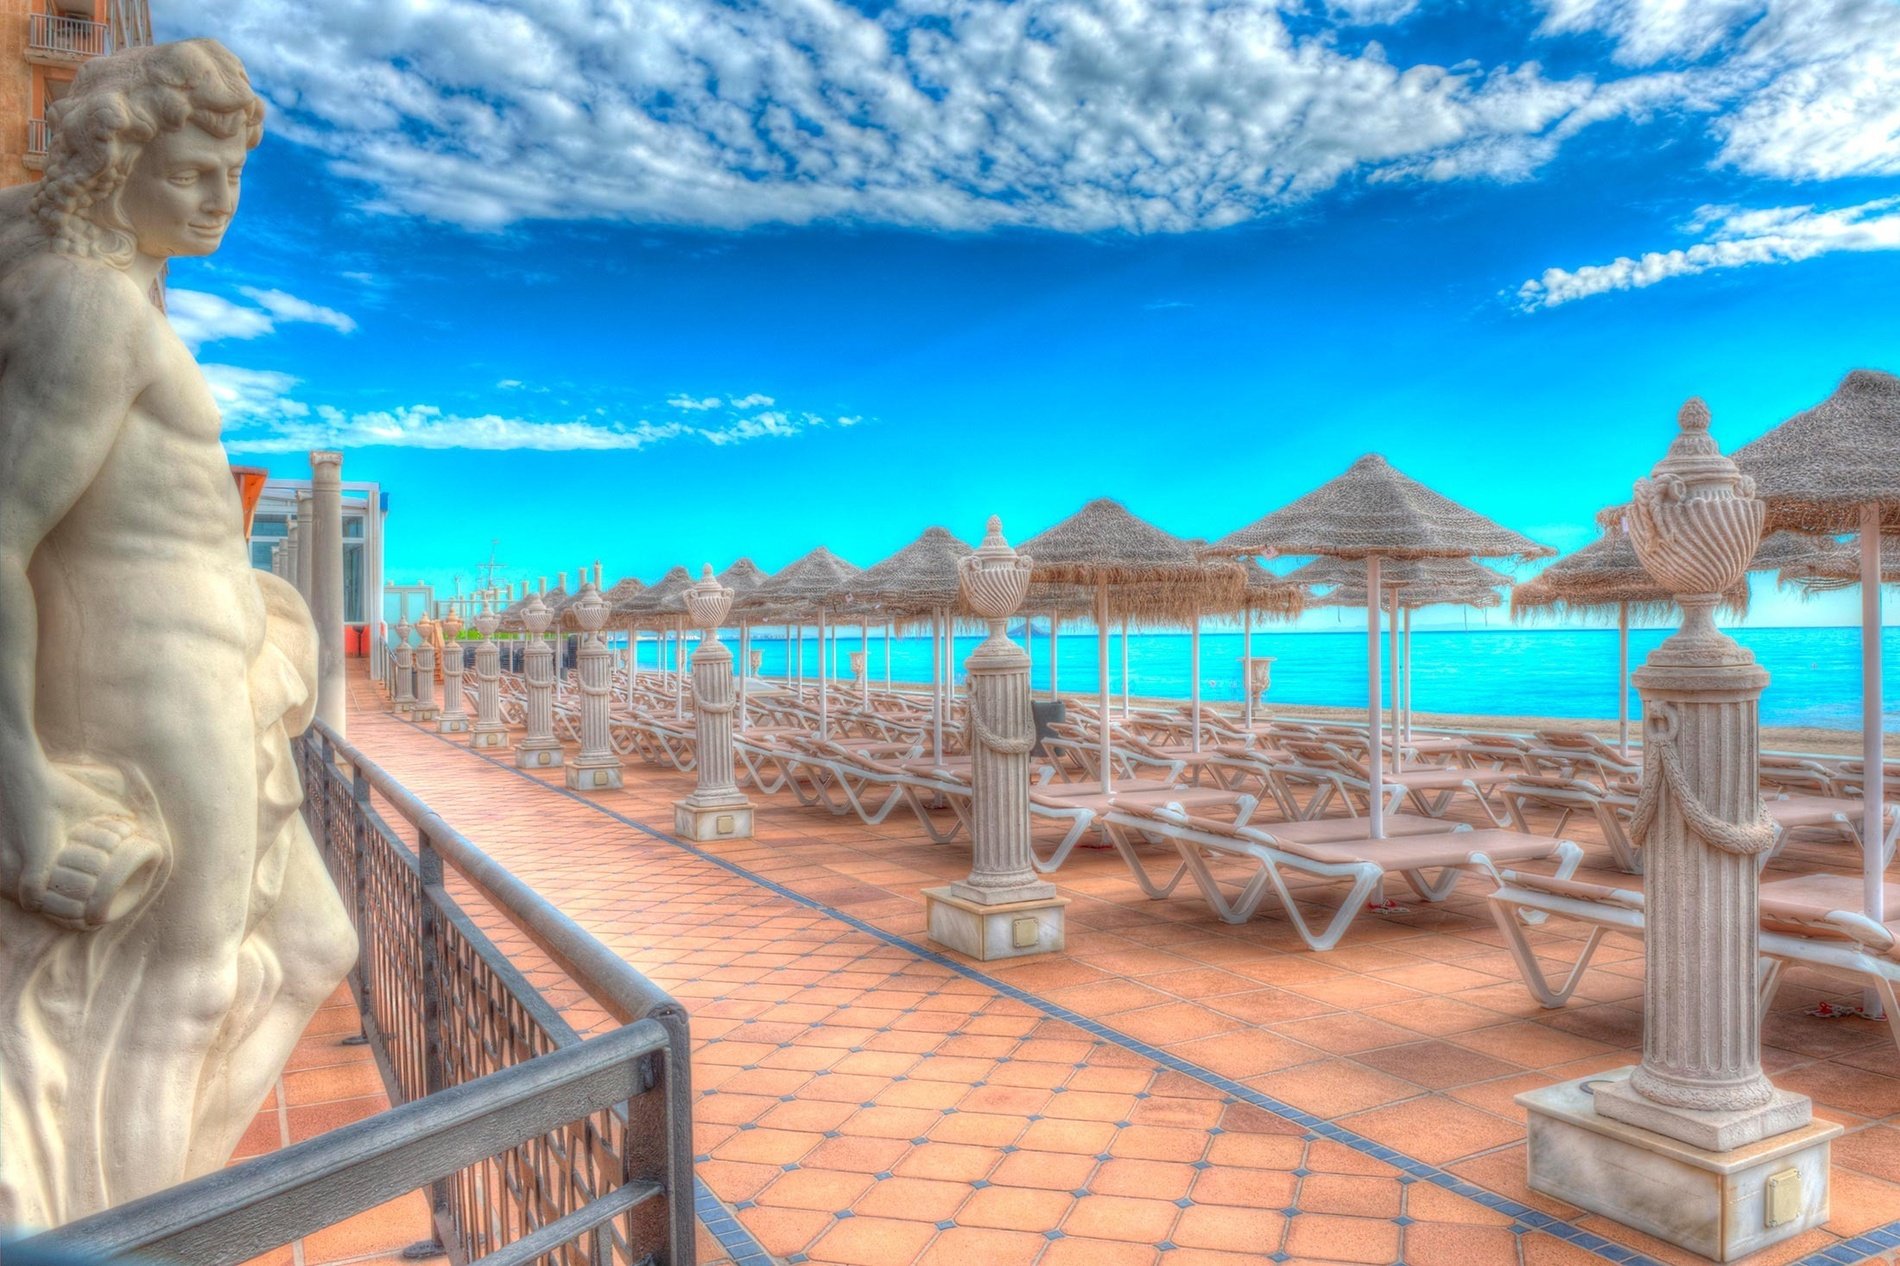  Tumbonas de relax en el Hotel Entremares a orillas del Mediterráneo